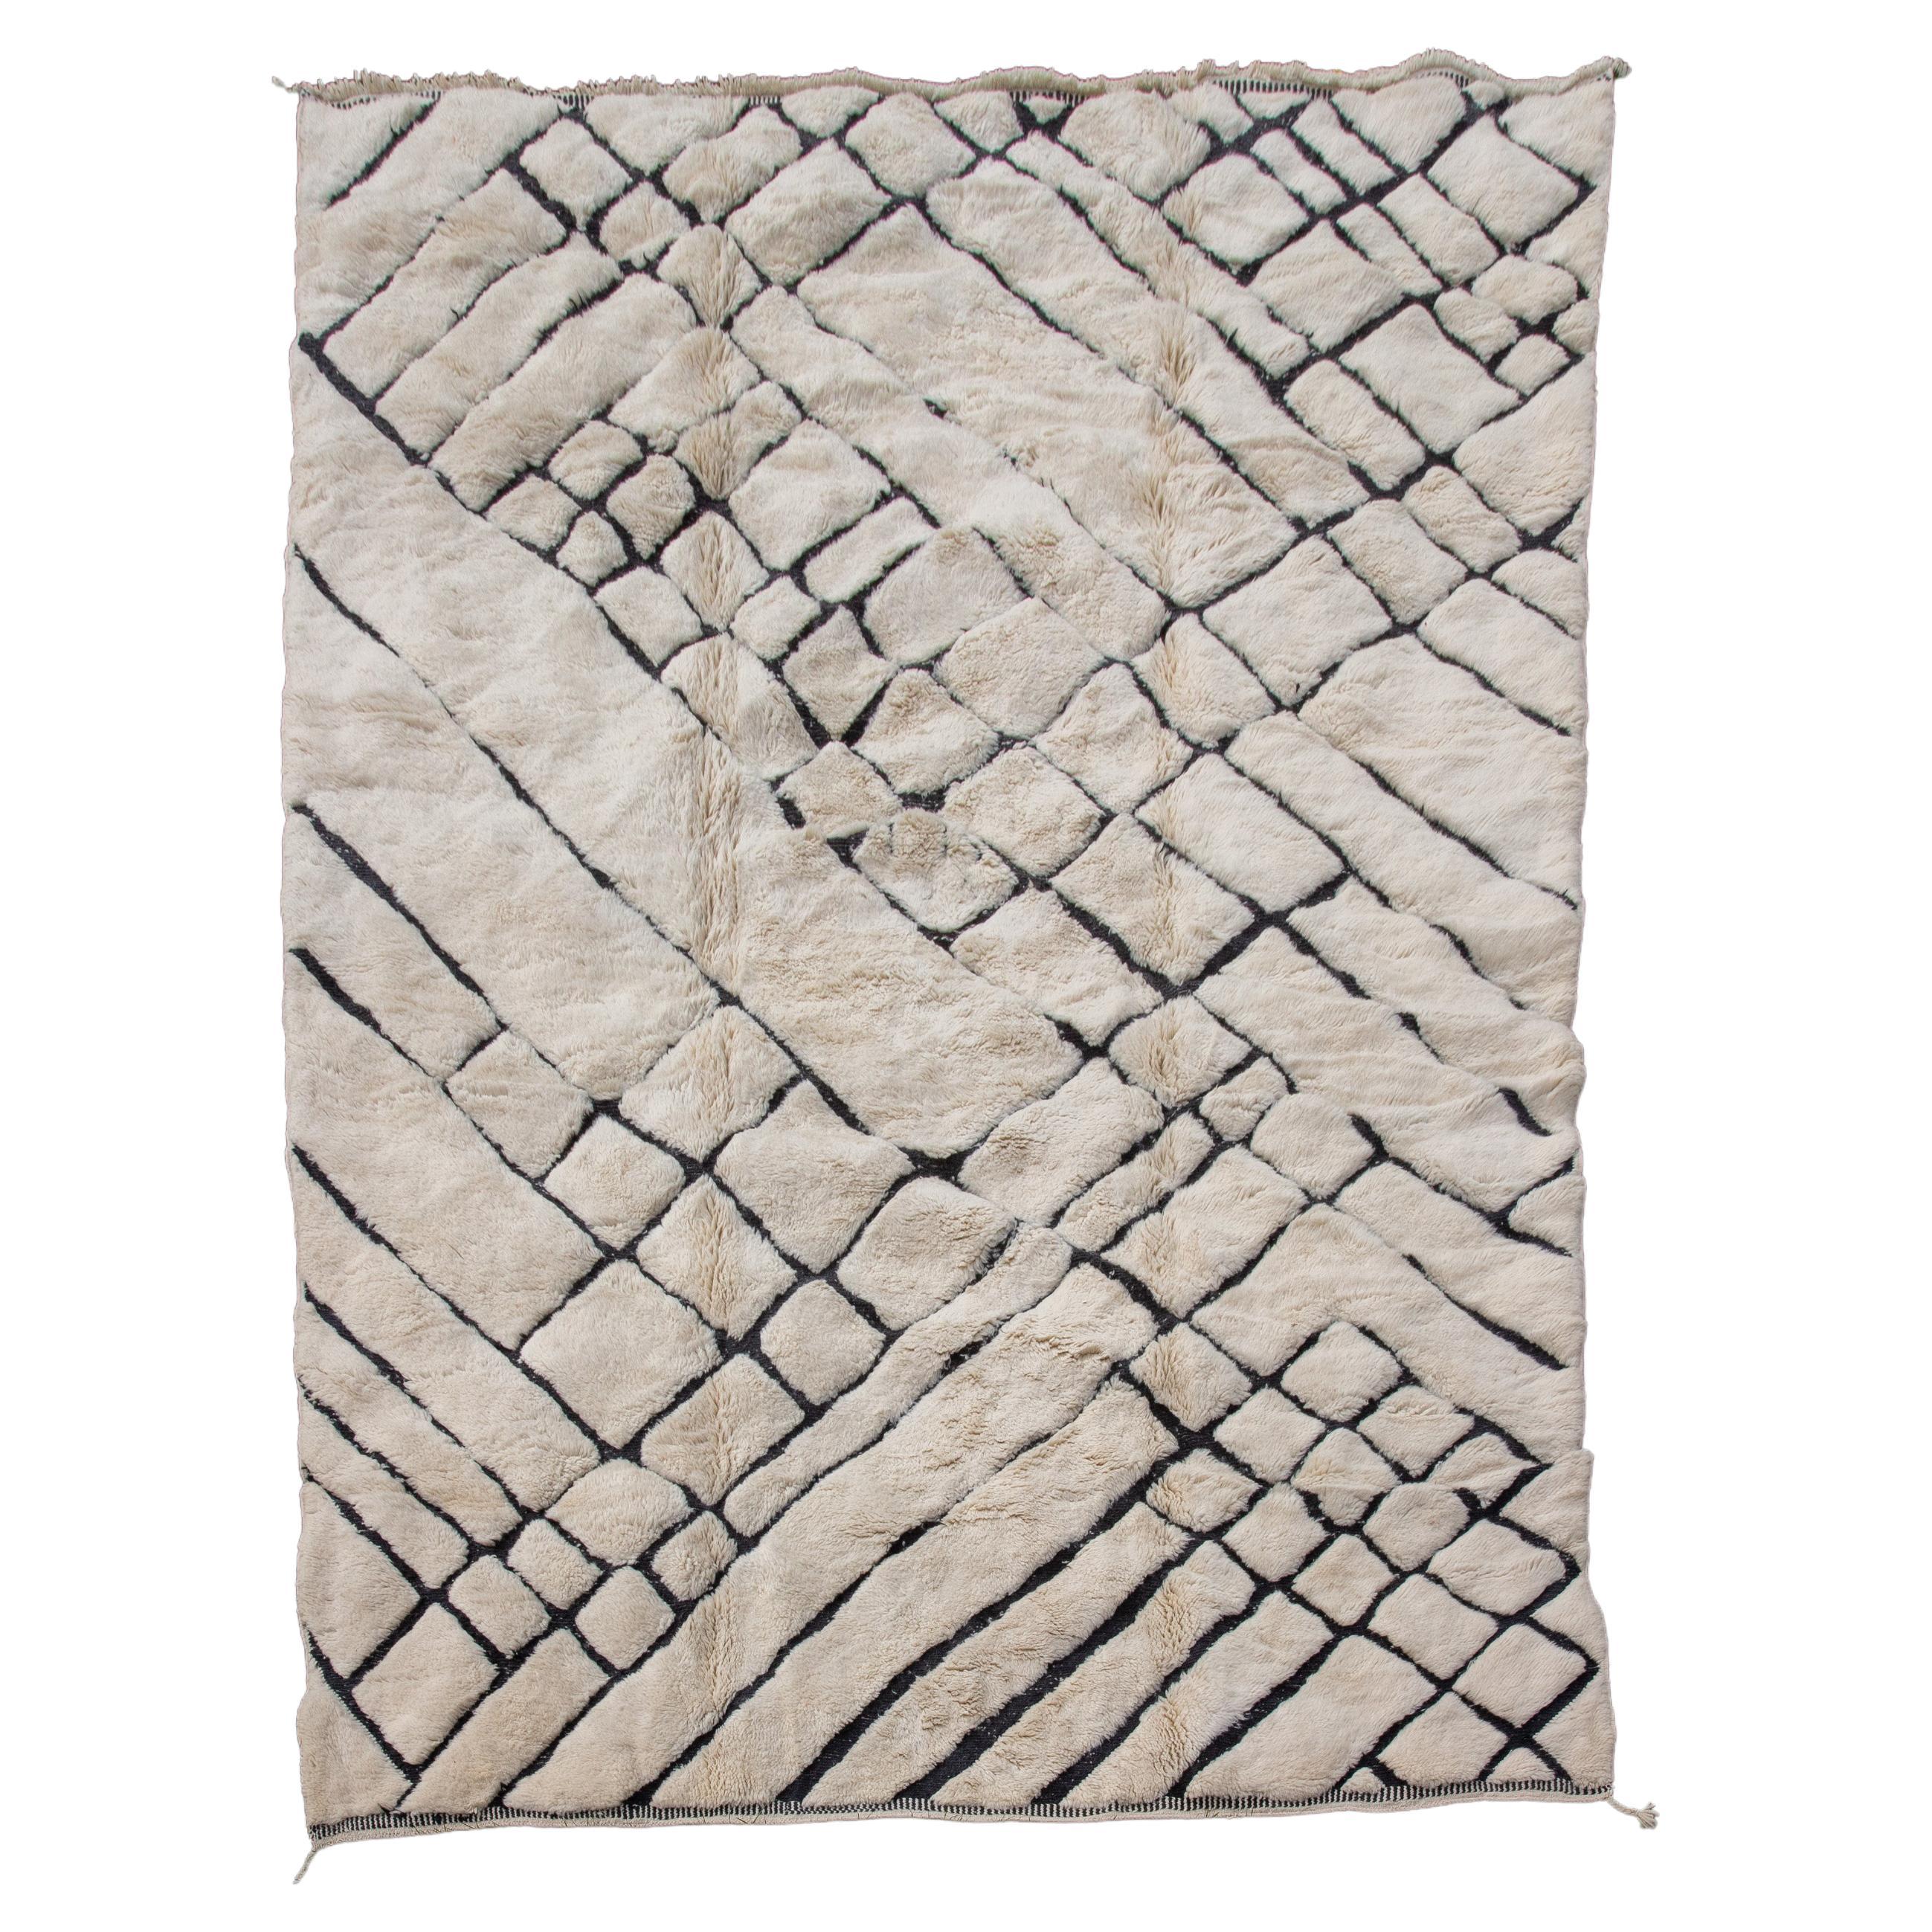 Abstrakter marokkanischer Teppich in Creme und Schwarz, 119" x 154"